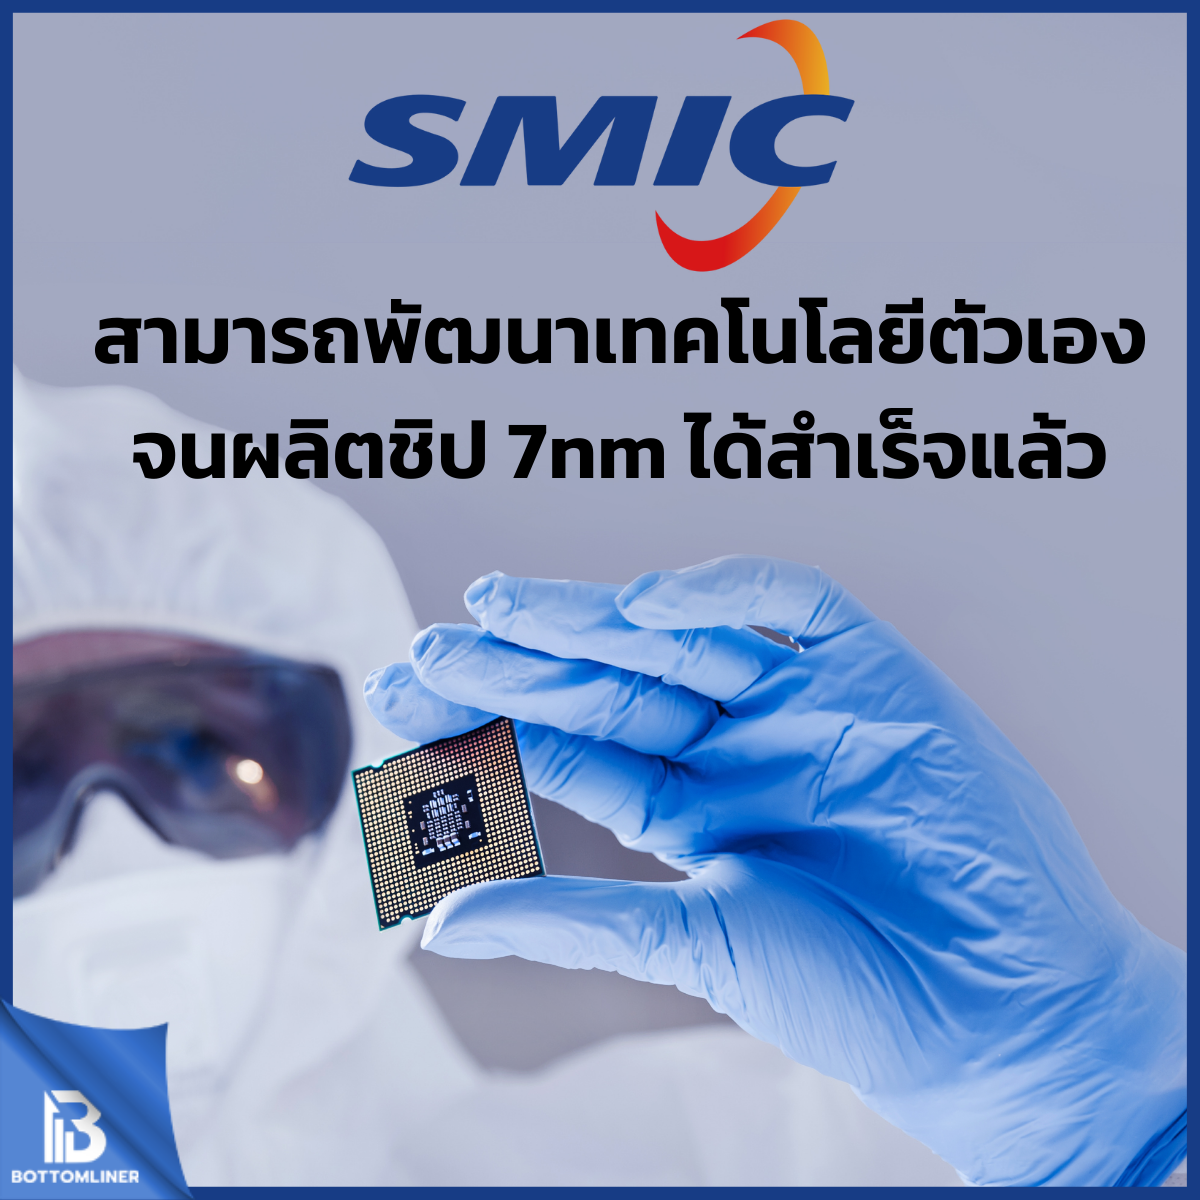 SMIC สามารถพัฒนาเทคโนโลยีตัวเองจนผลิตชิป 7nm ได้สำเร็จแล้ว